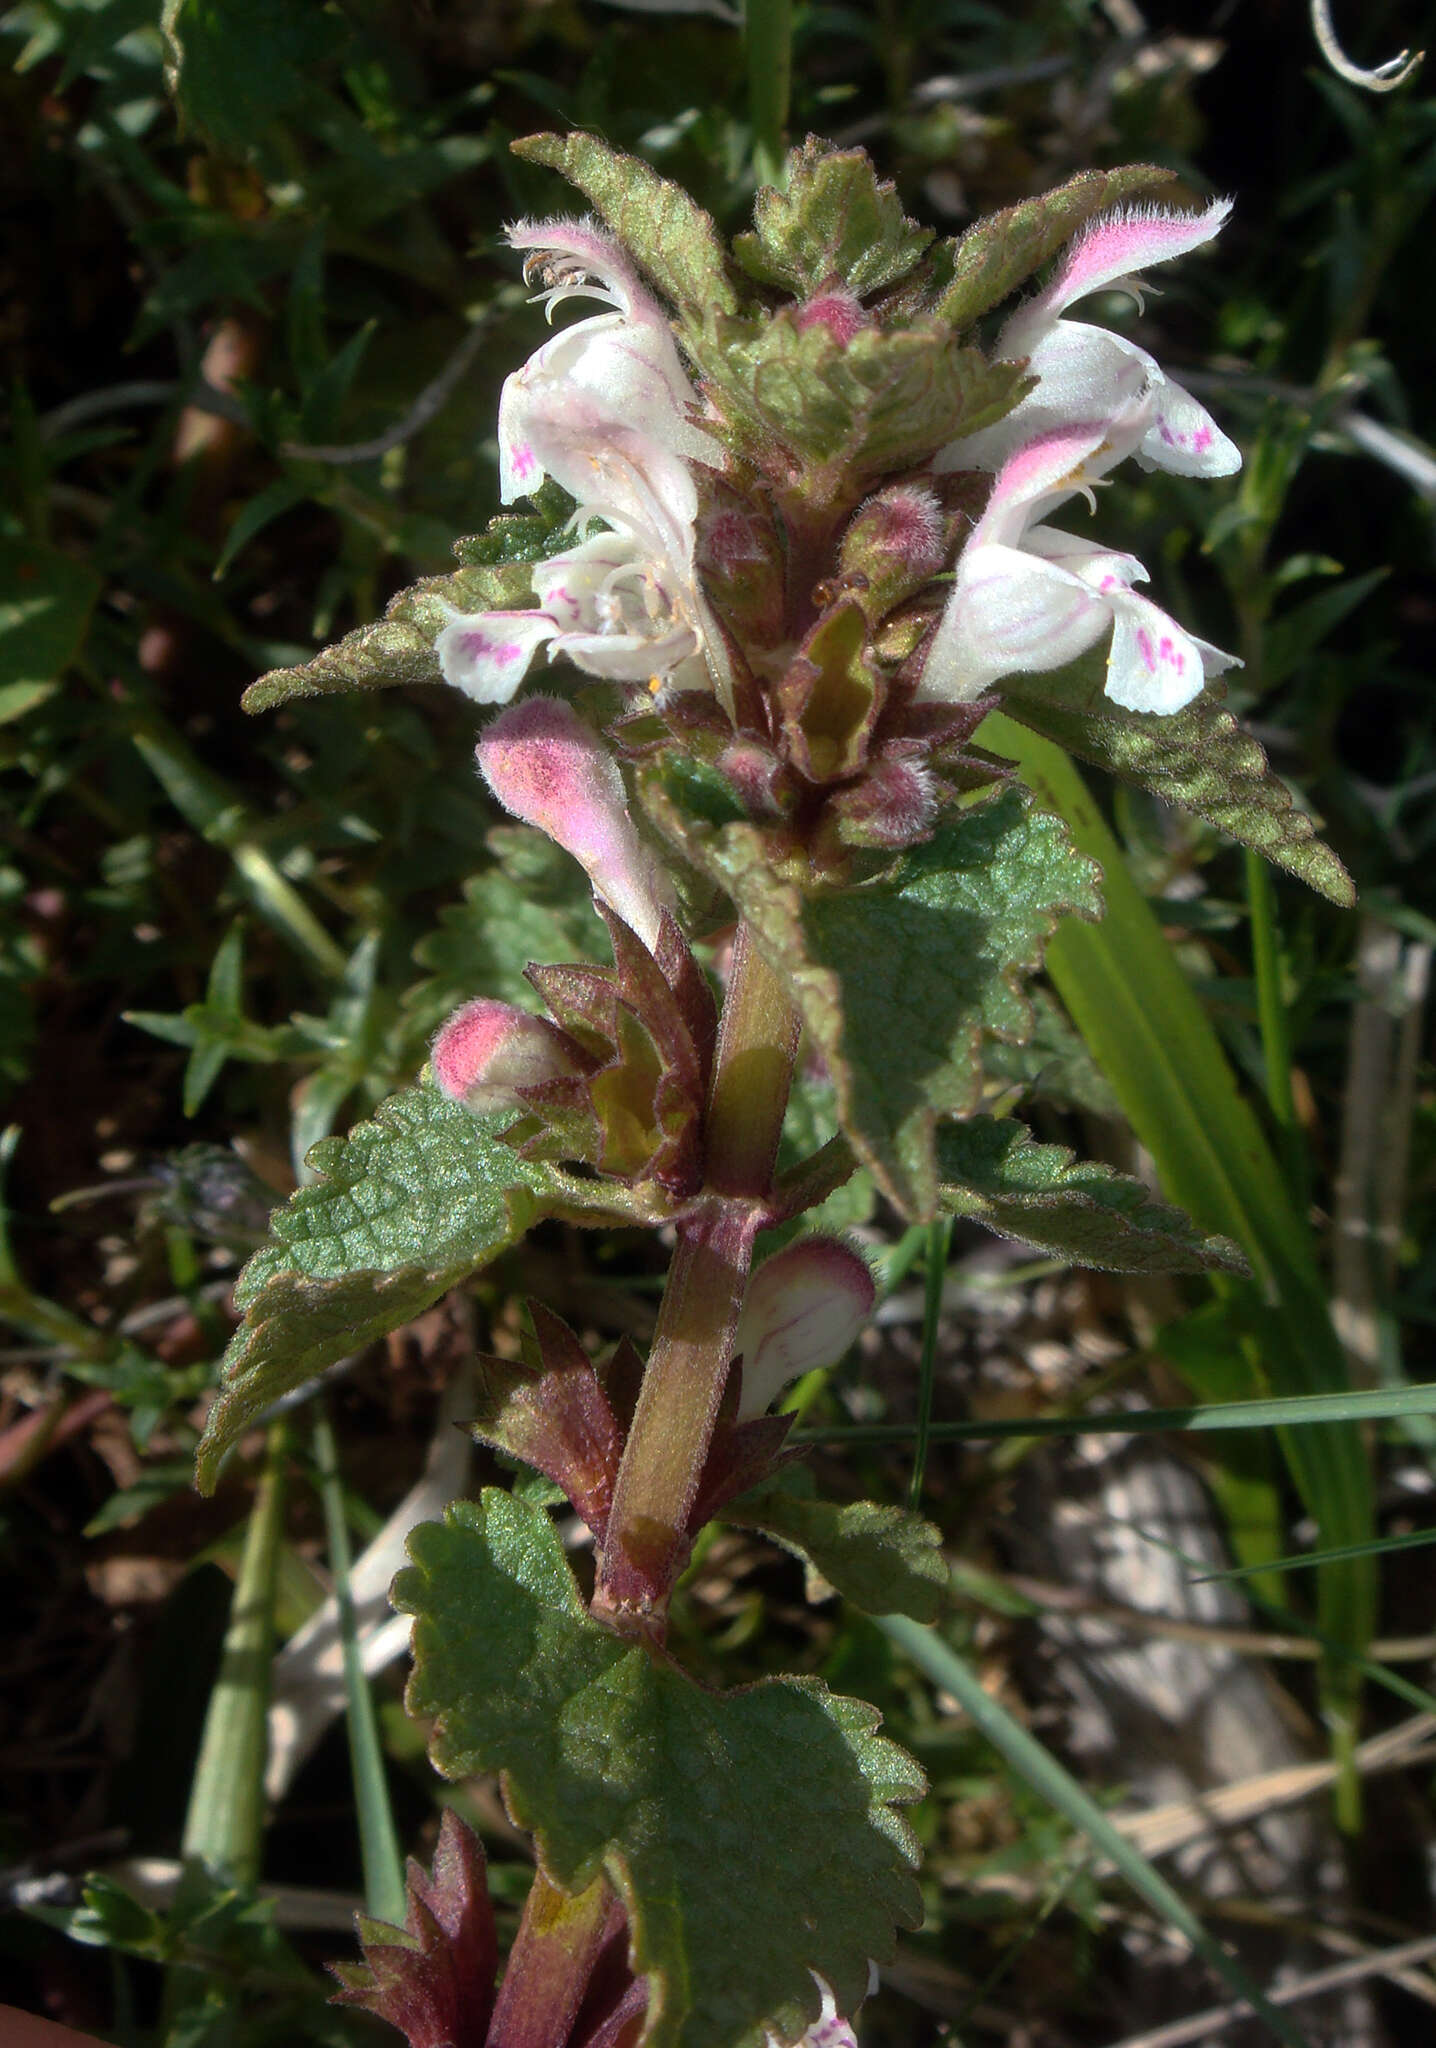 Image of Lamium garganicum subsp. corsicum (Gren. & Godr.) Mennema